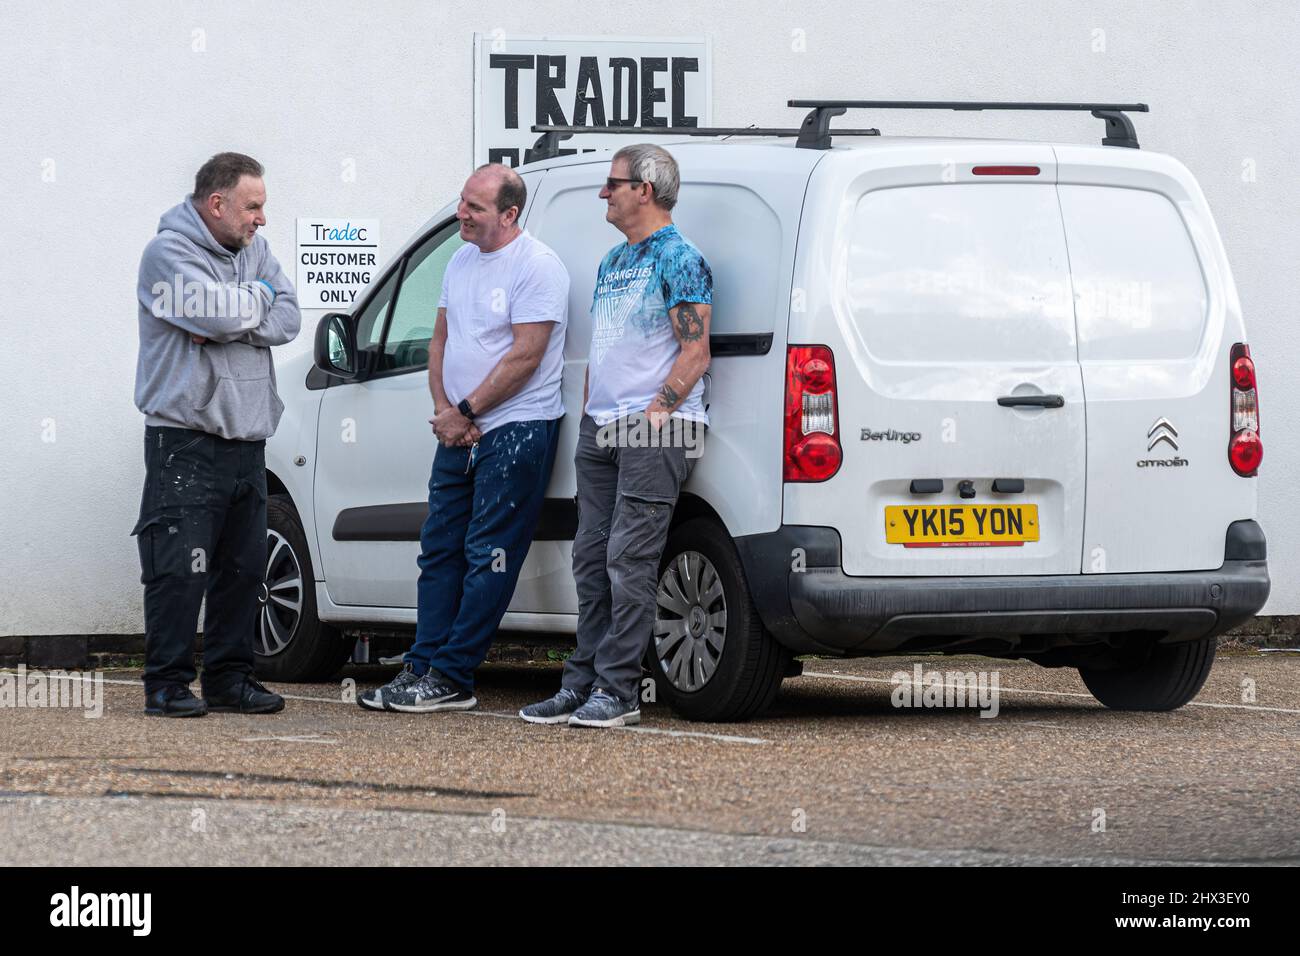 Trois hommes ouvriers peintres debout près d'un van bavardant et plaisantant dans le parking d'une peinture et de décoration d'affaires, Royaume-Uni vie quotidienne de travail Banque D'Images